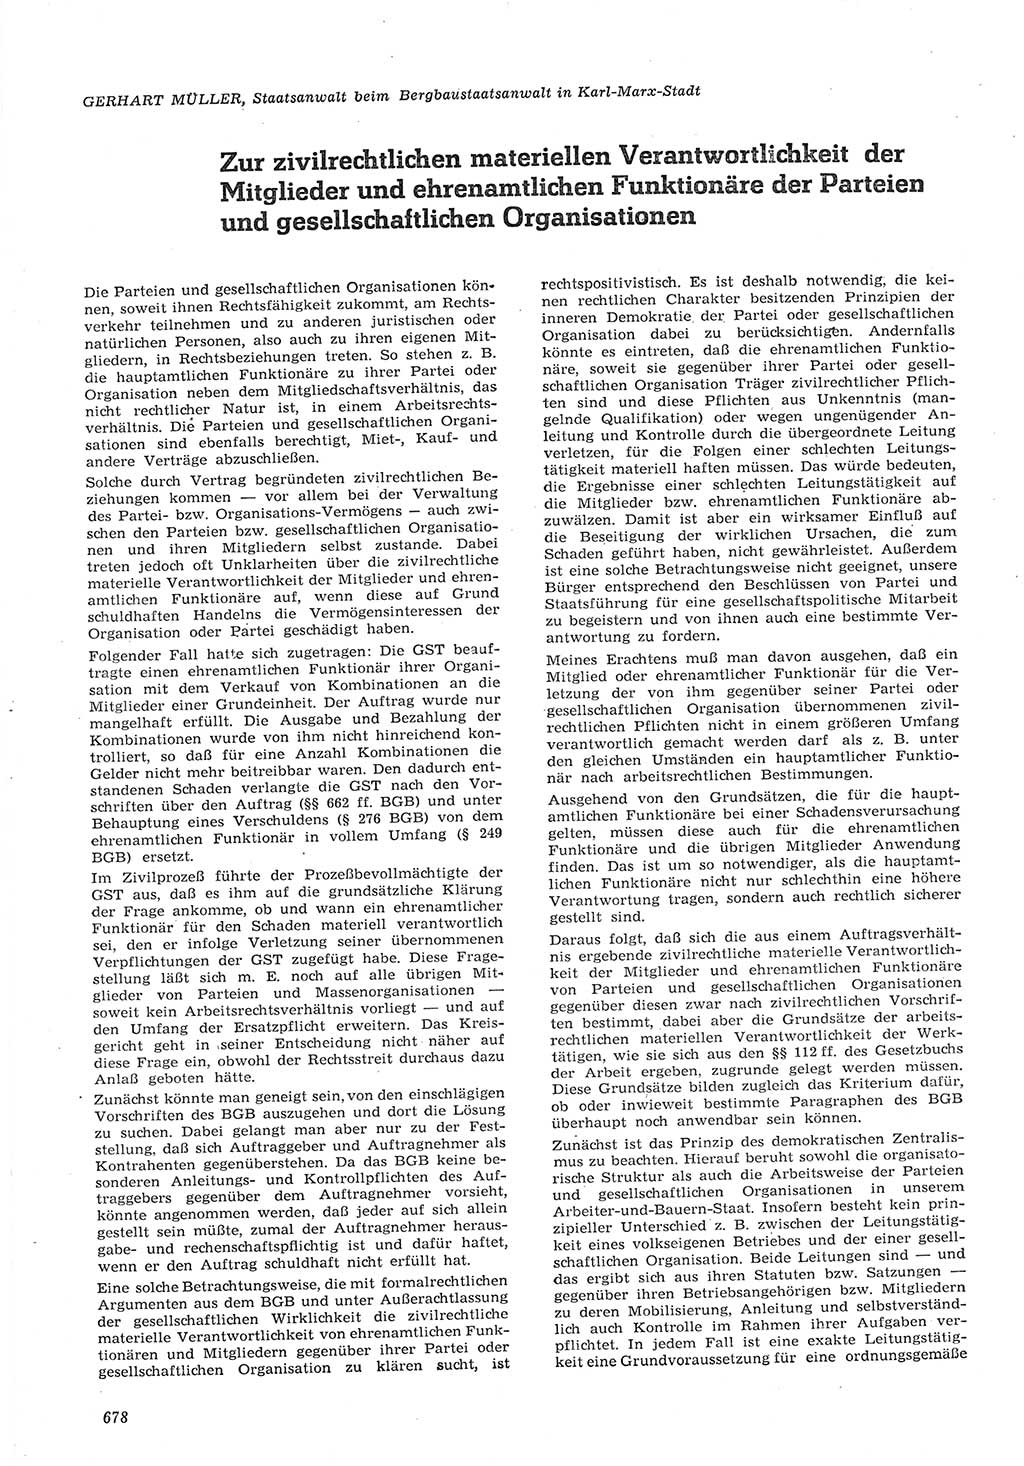 Neue Justiz (NJ), Zeitschrift für Recht und Rechtswissenschaft [Deutsche Demokratische Republik (DDR)], 15. Jahrgang 1961, Seite 678 (NJ DDR 1961, S. 678)